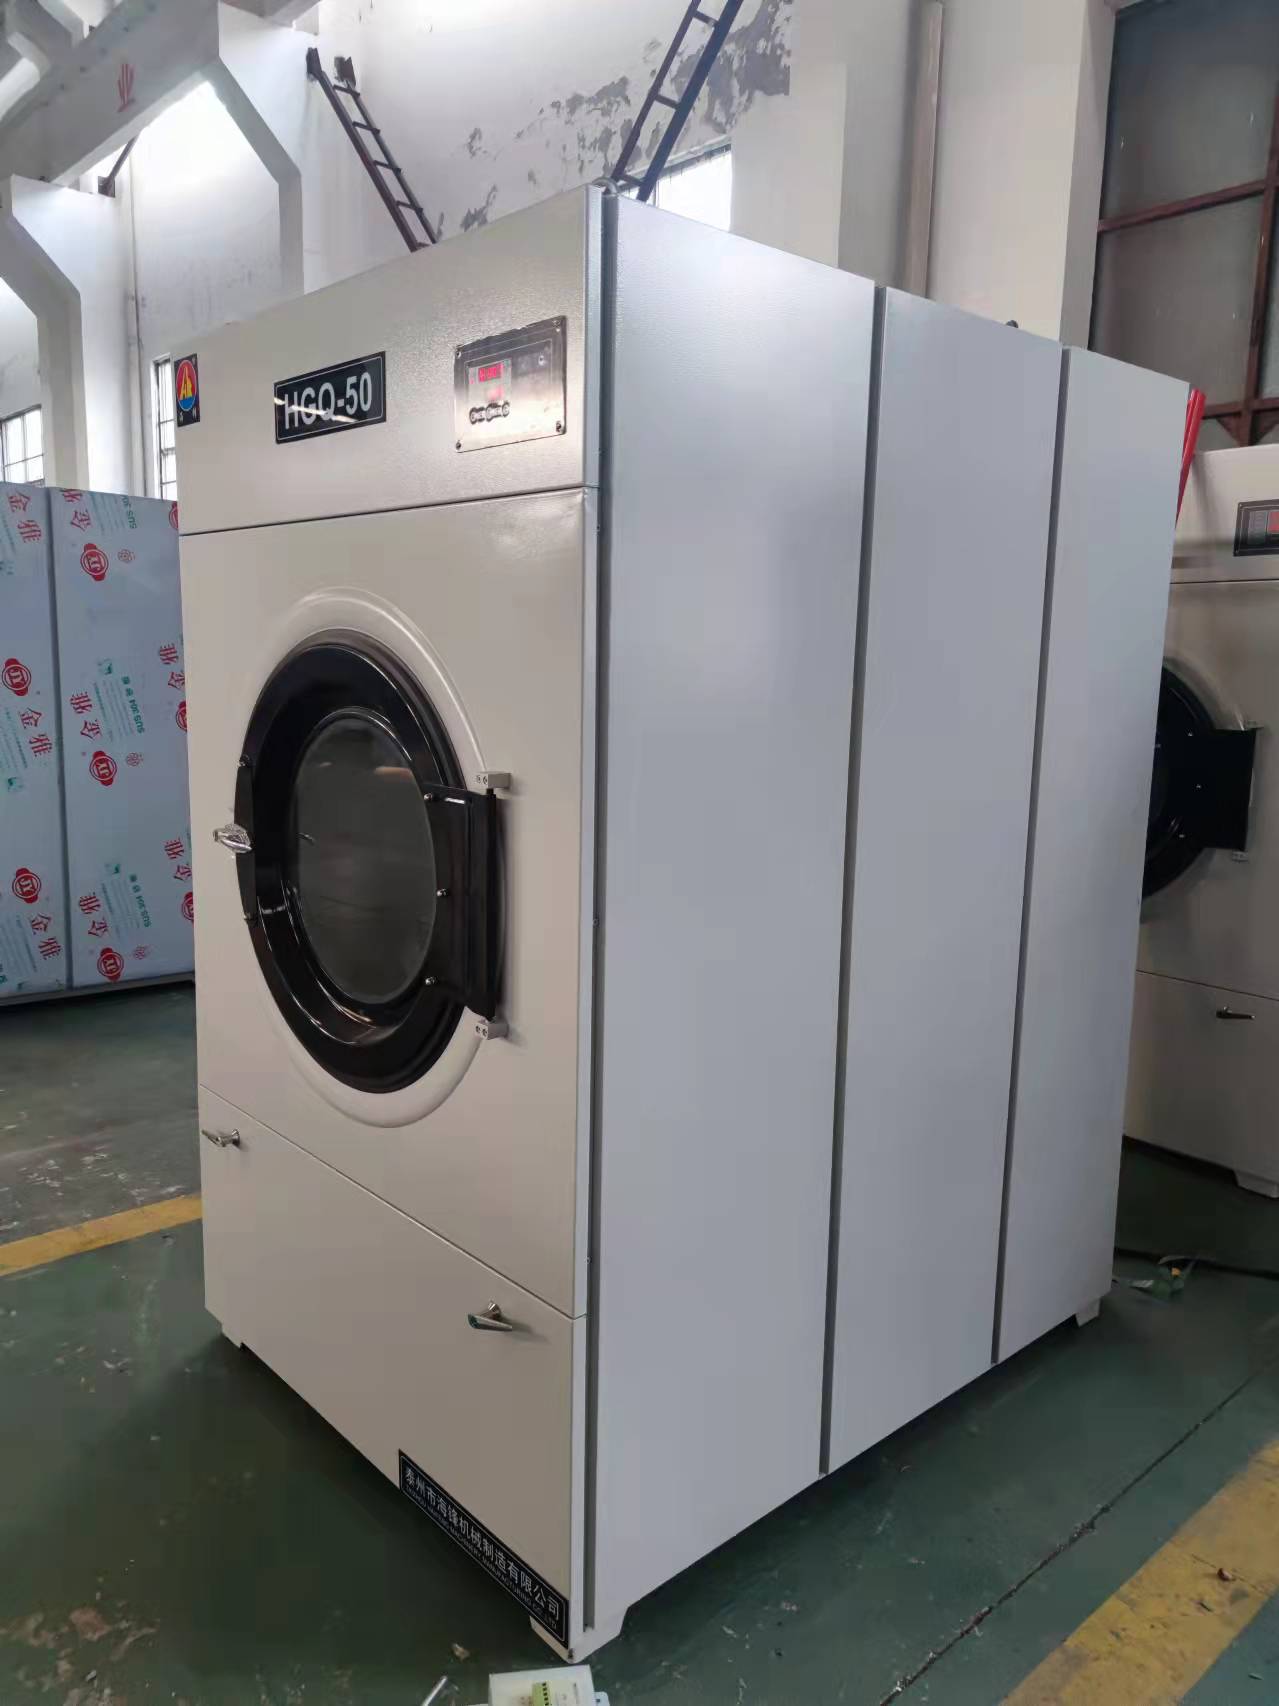 50kg capacity stainless steel fabric washing dryer machine